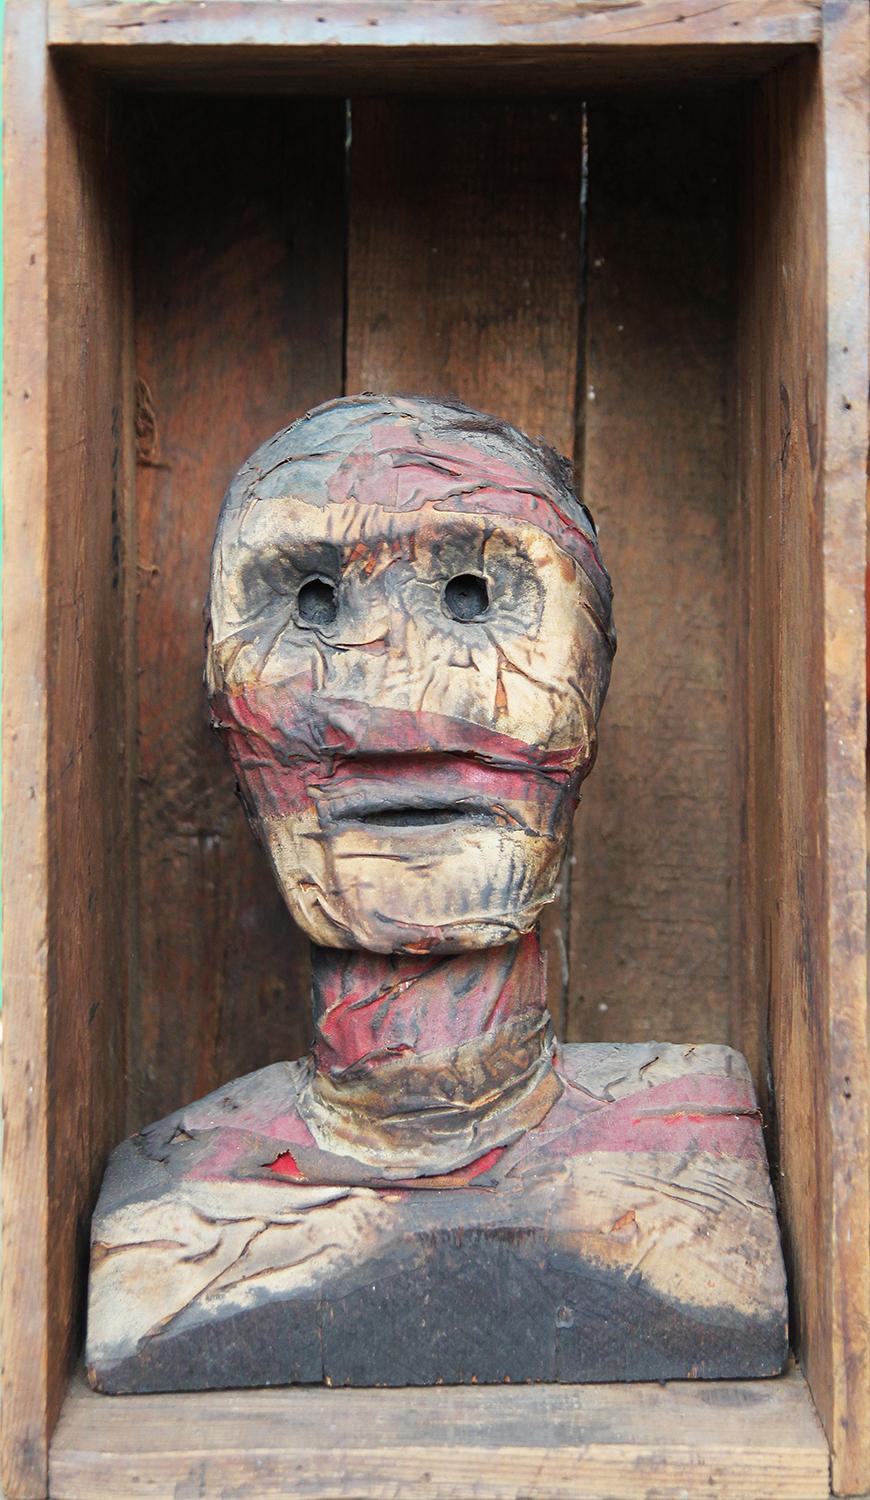 Moderne moderne texanische Mixed-Media-Skulptur einer Mummified Portraitbüste in einer Schachtel / Crate